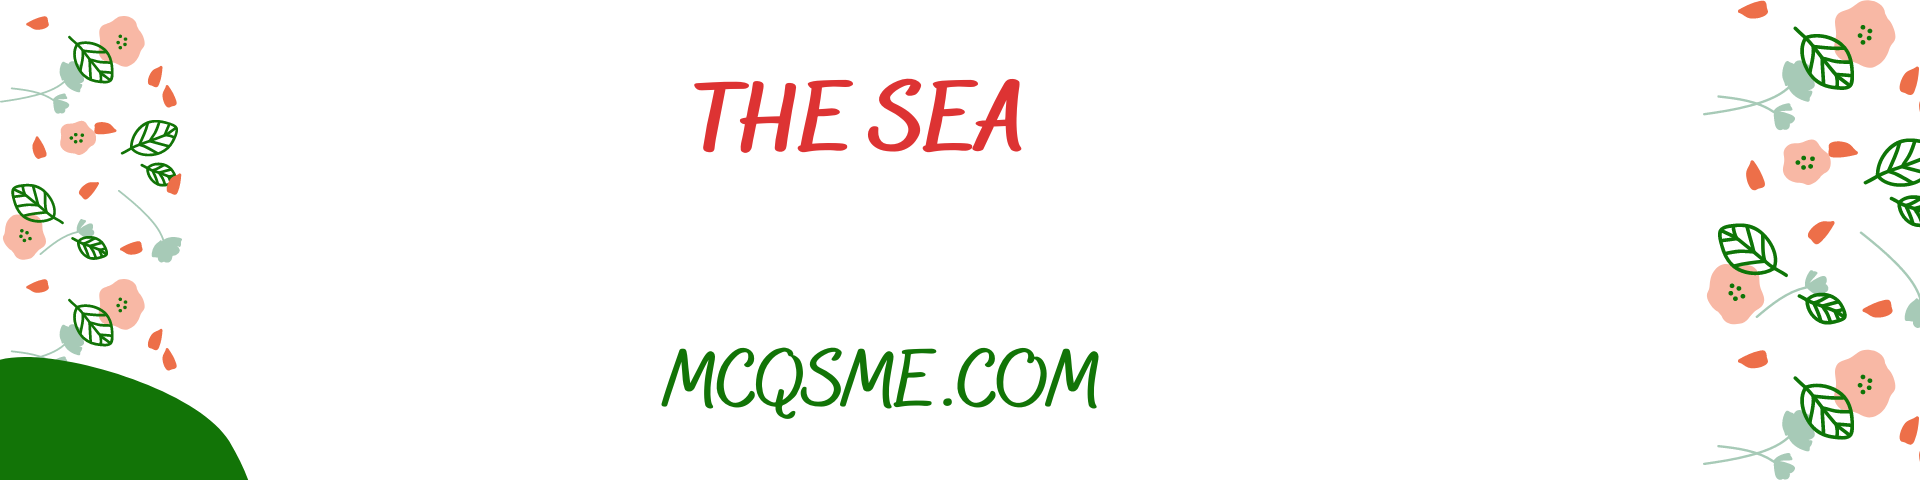 The Sea mcqs